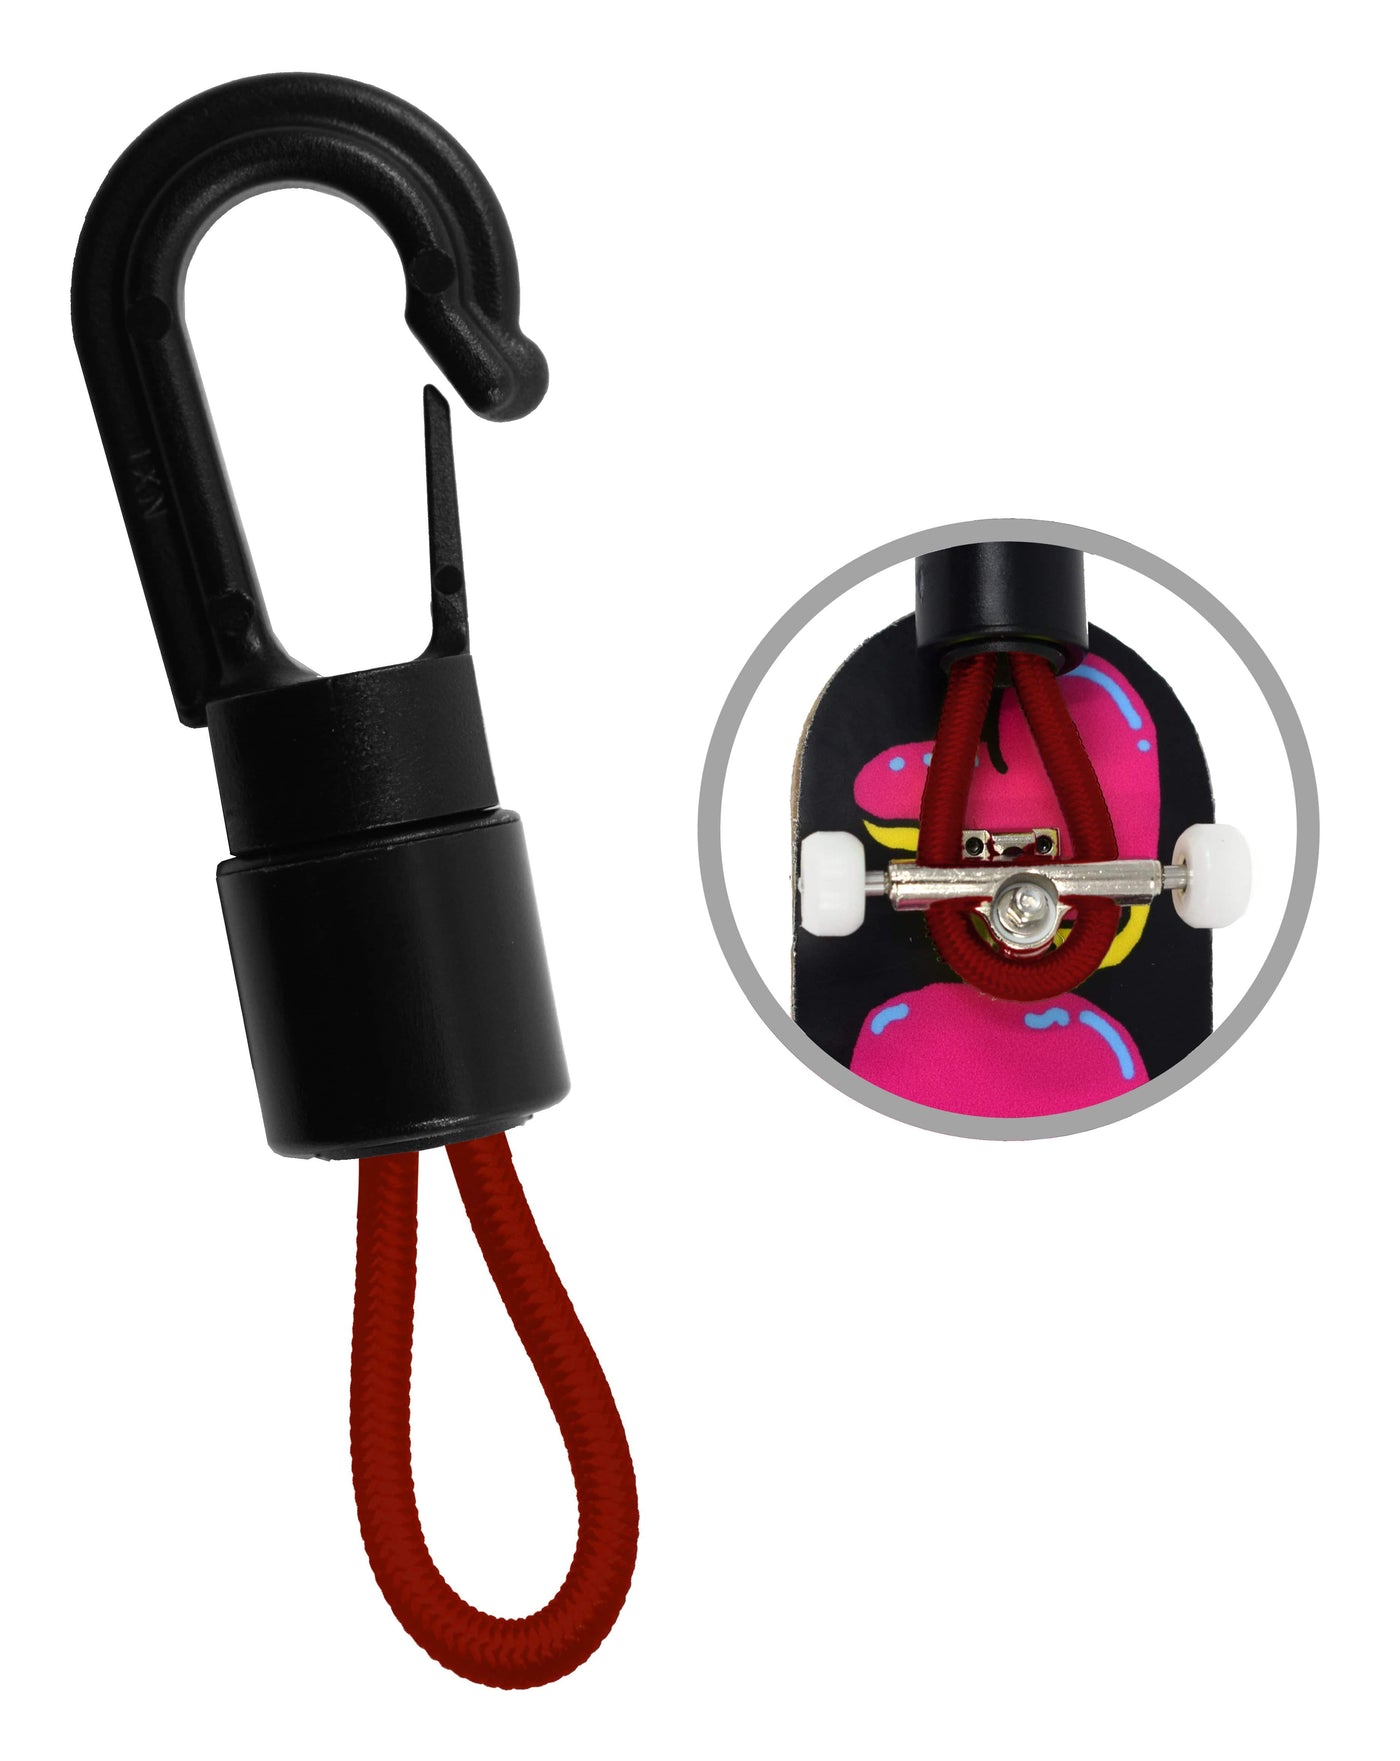 Teak Tuning Complete Carrier - Premium Nylon Edition - Red Delicious Colorway Red Delicious Colorway